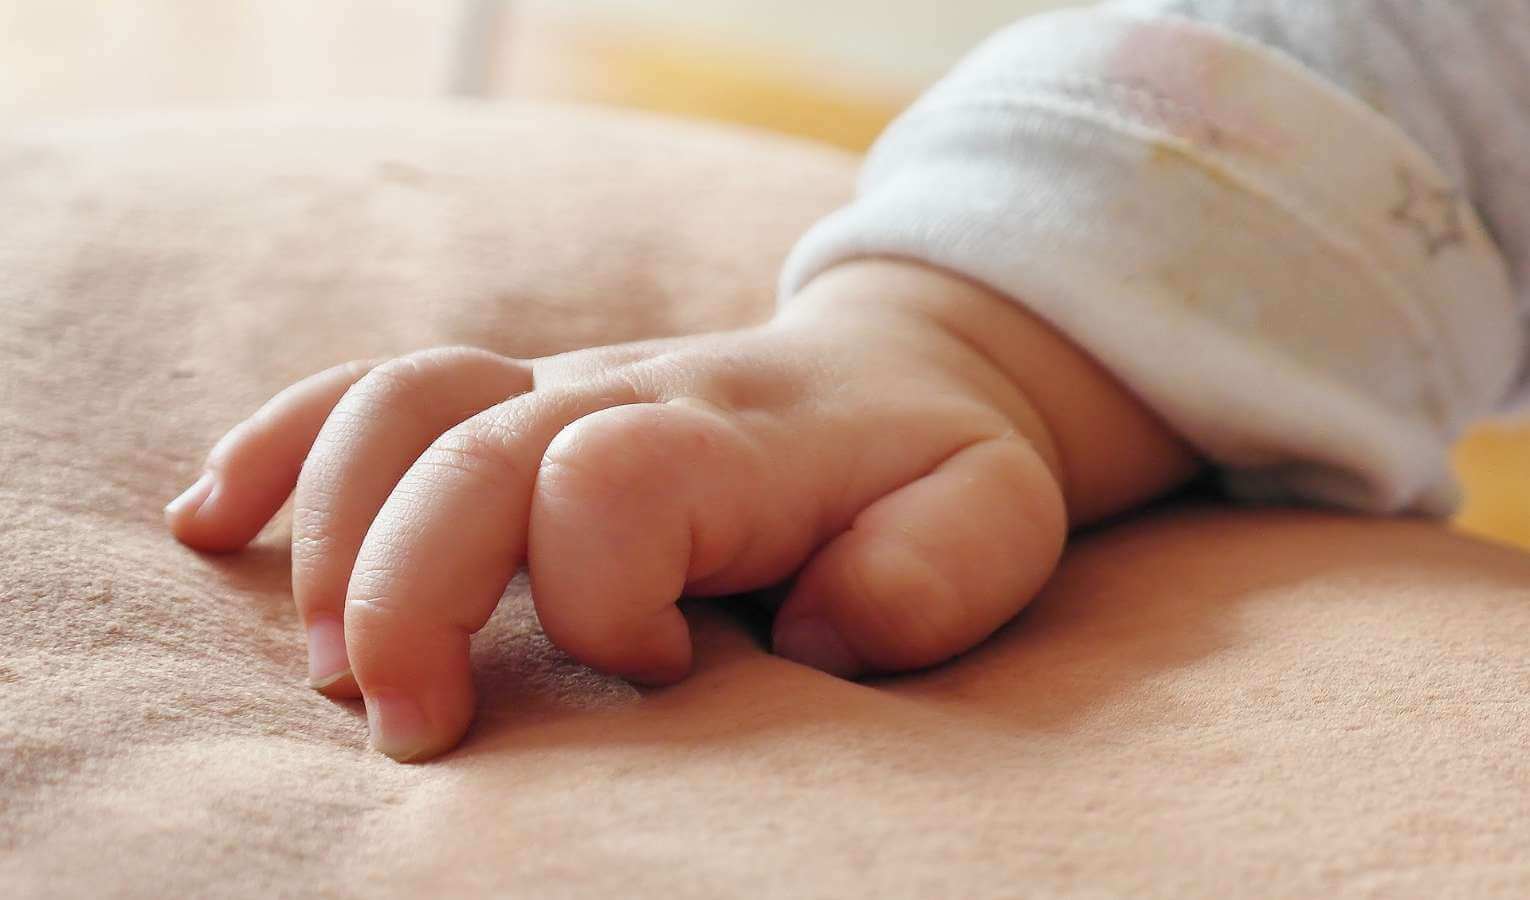 Choisir le prénom de bébé : 4 choses à prendre en compte